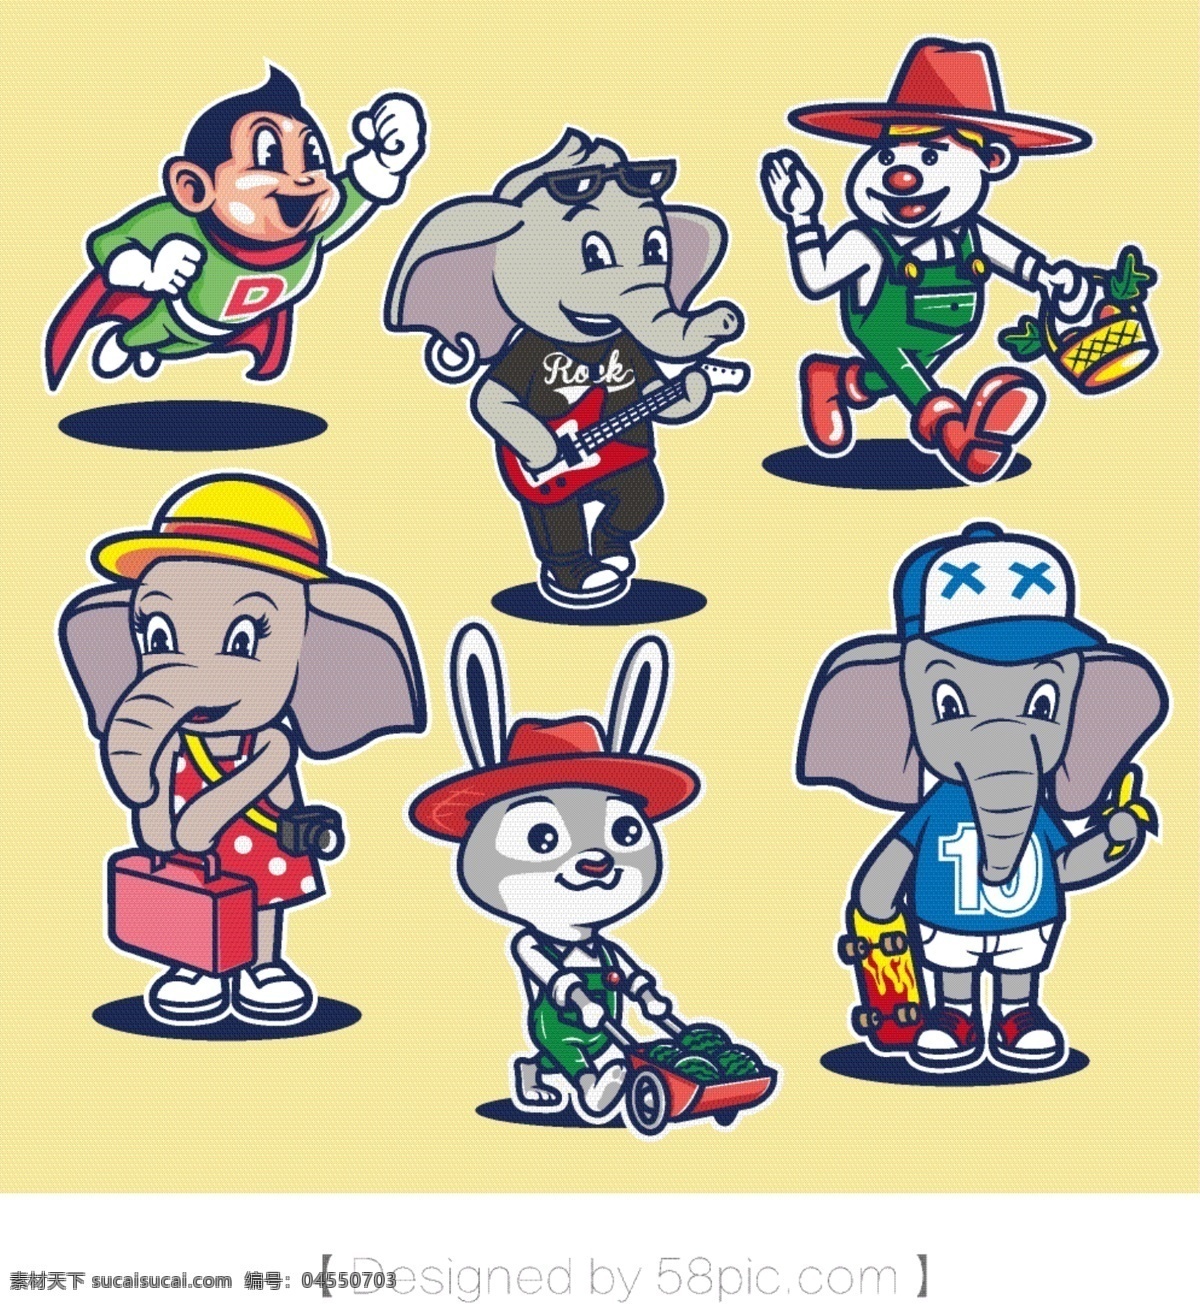 卡通 人物 动物 大象 兔子 阿童 木 匹诺曹 原创 手绘 卡通人物素材 人物素材 卡通素材 矢量素材 卡通动物素材 吉祥物素材